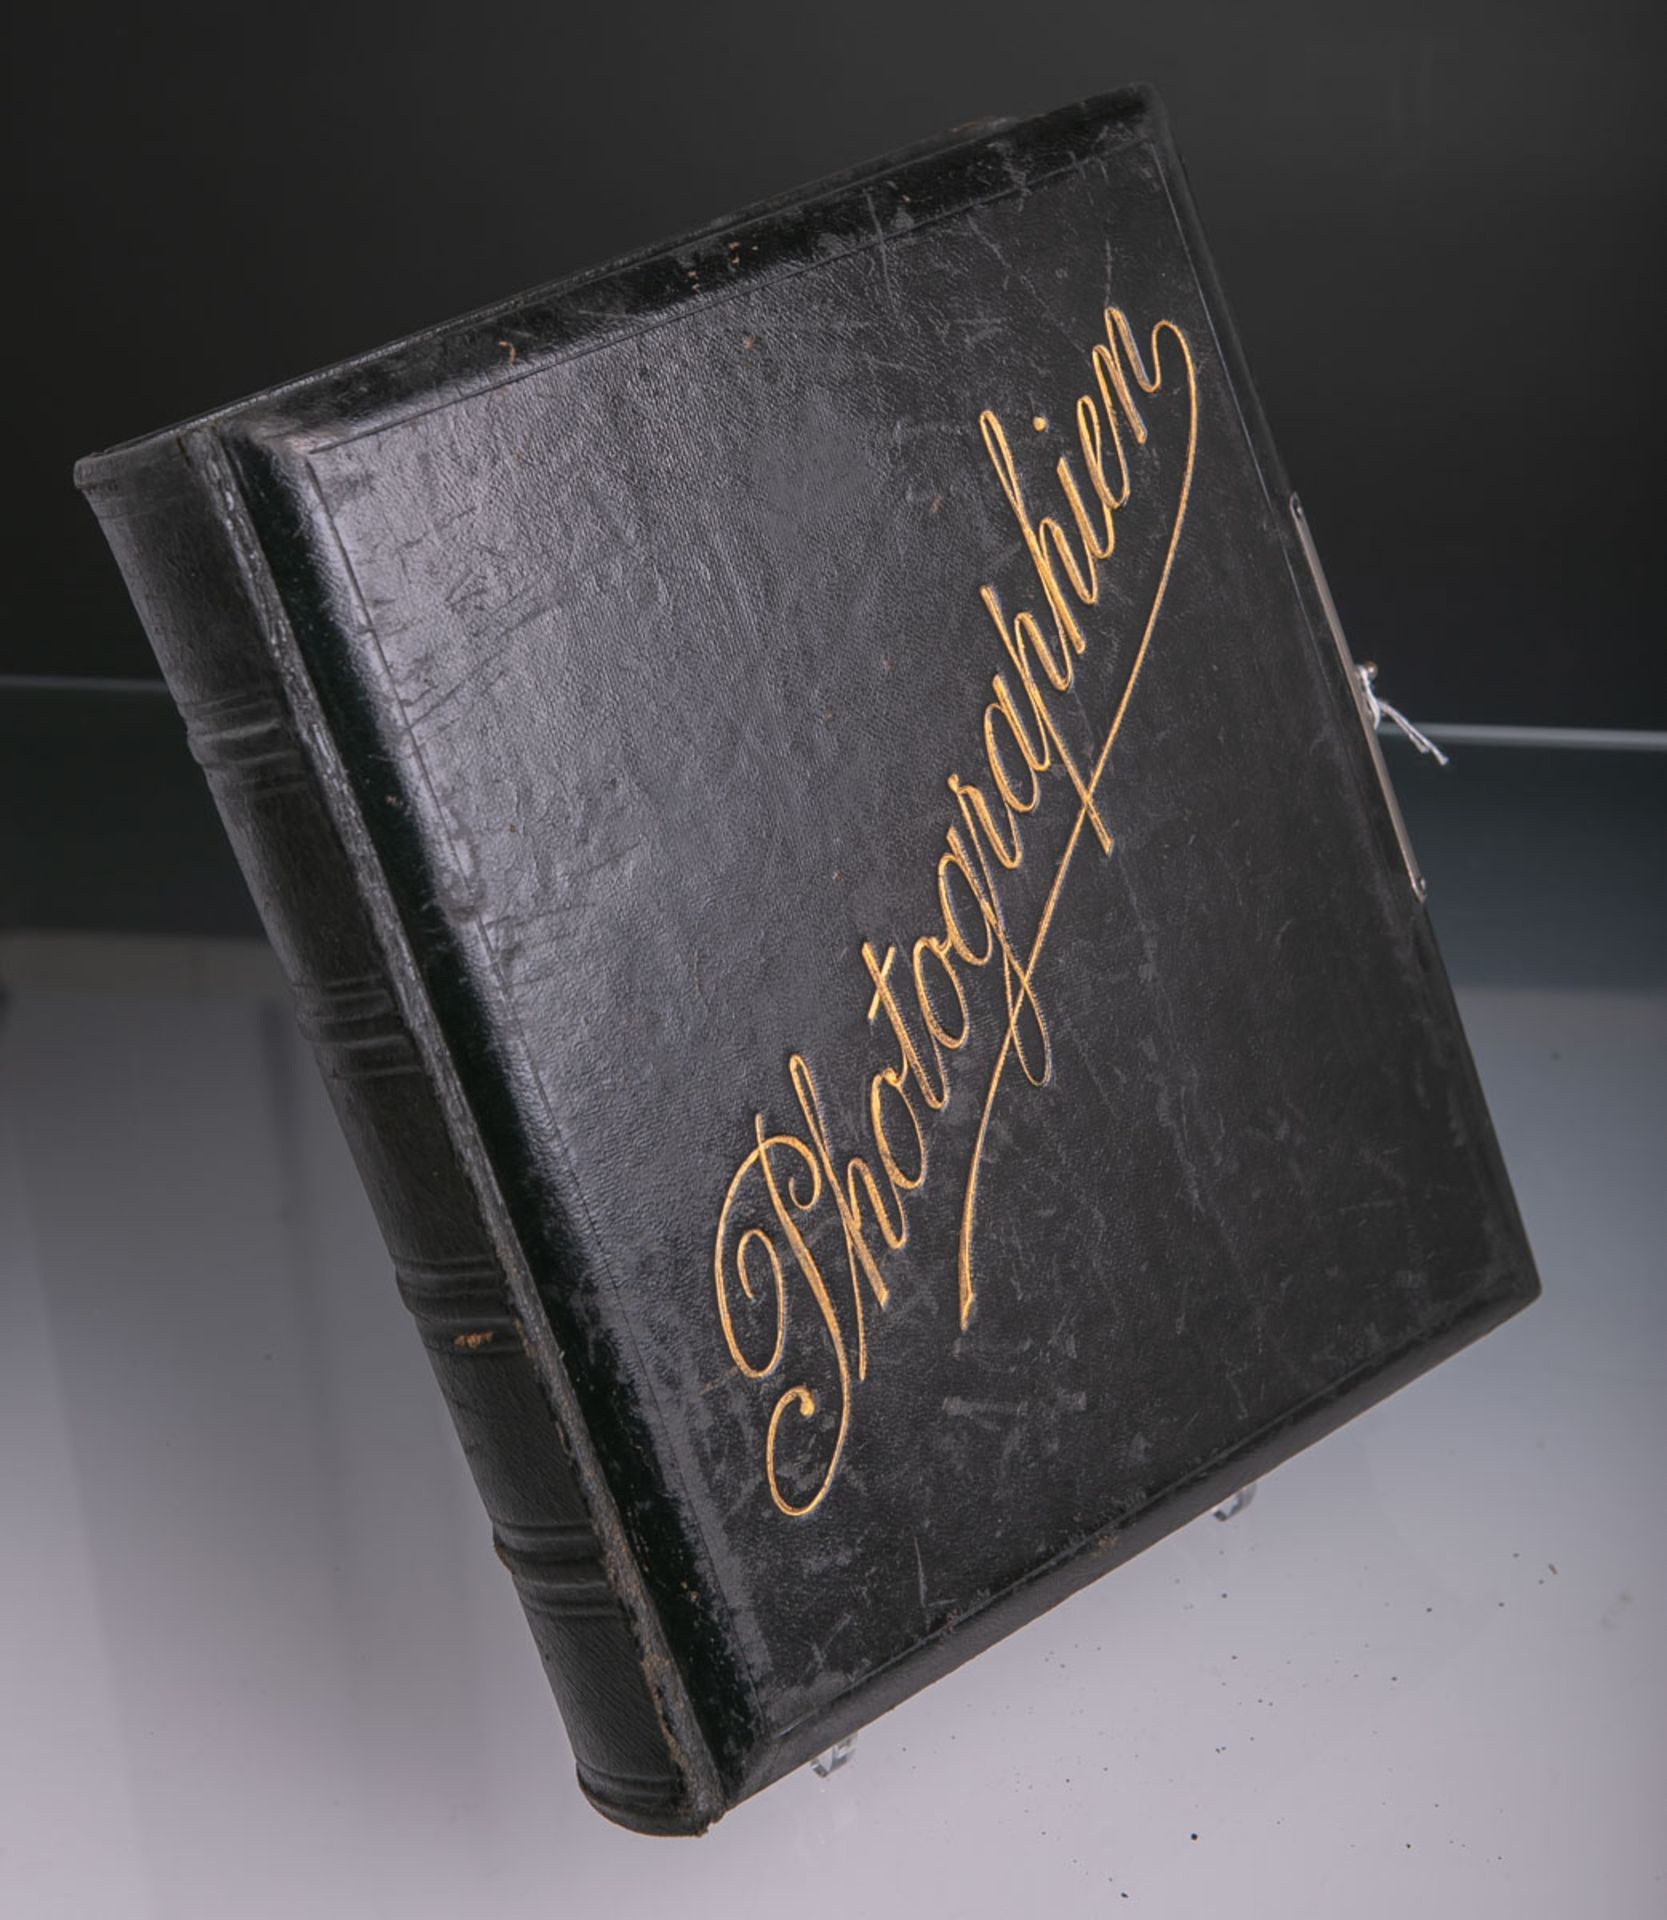 Kassette in Buchform (wohl um 1900), aufklappbar, auf Deckel in Gold bez. "Photographien", ca. 25